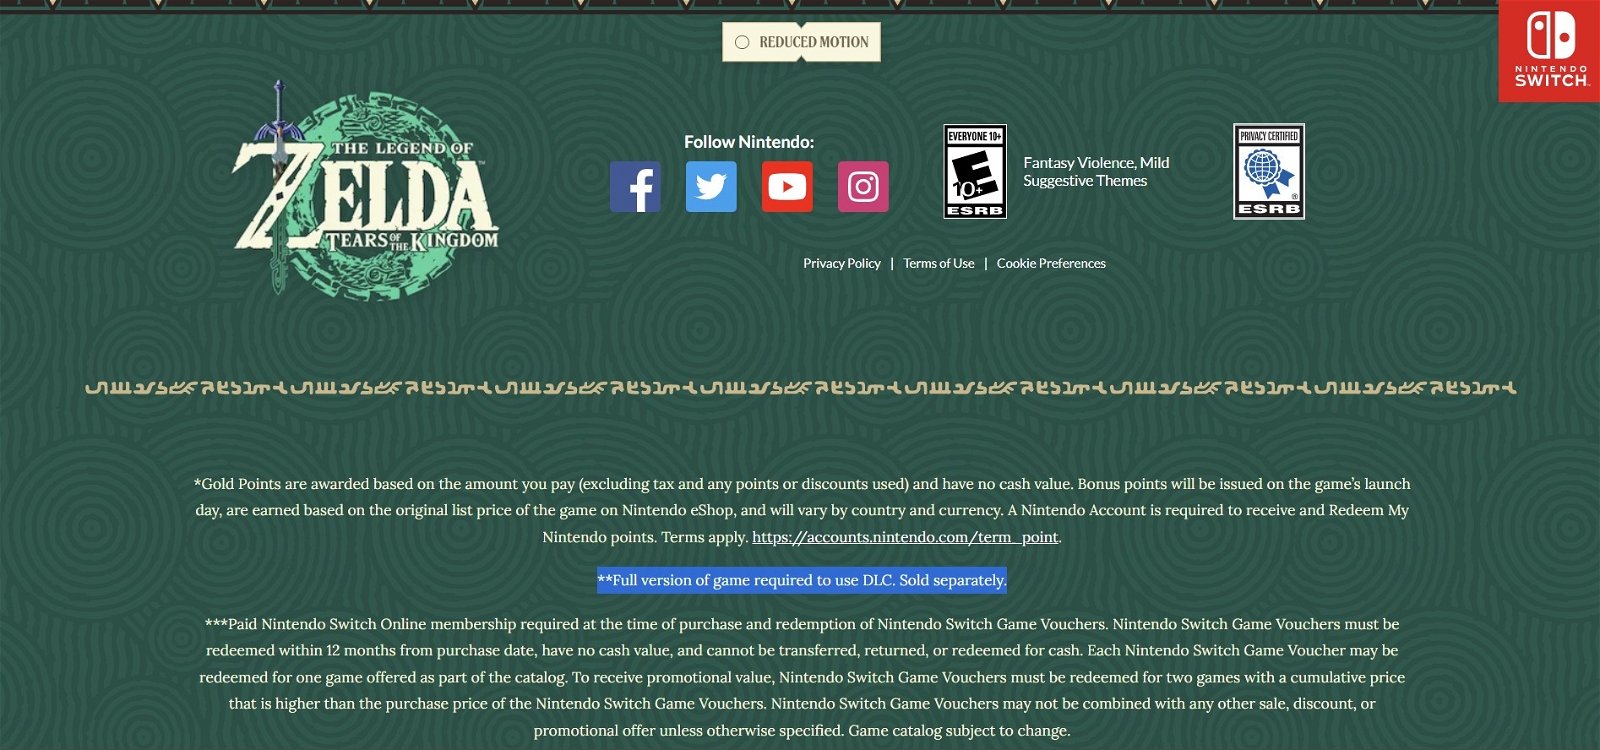 Parte de la web oficial de Zelda: Tears of the Kingdom donde se confirma que el juego contará con DLC